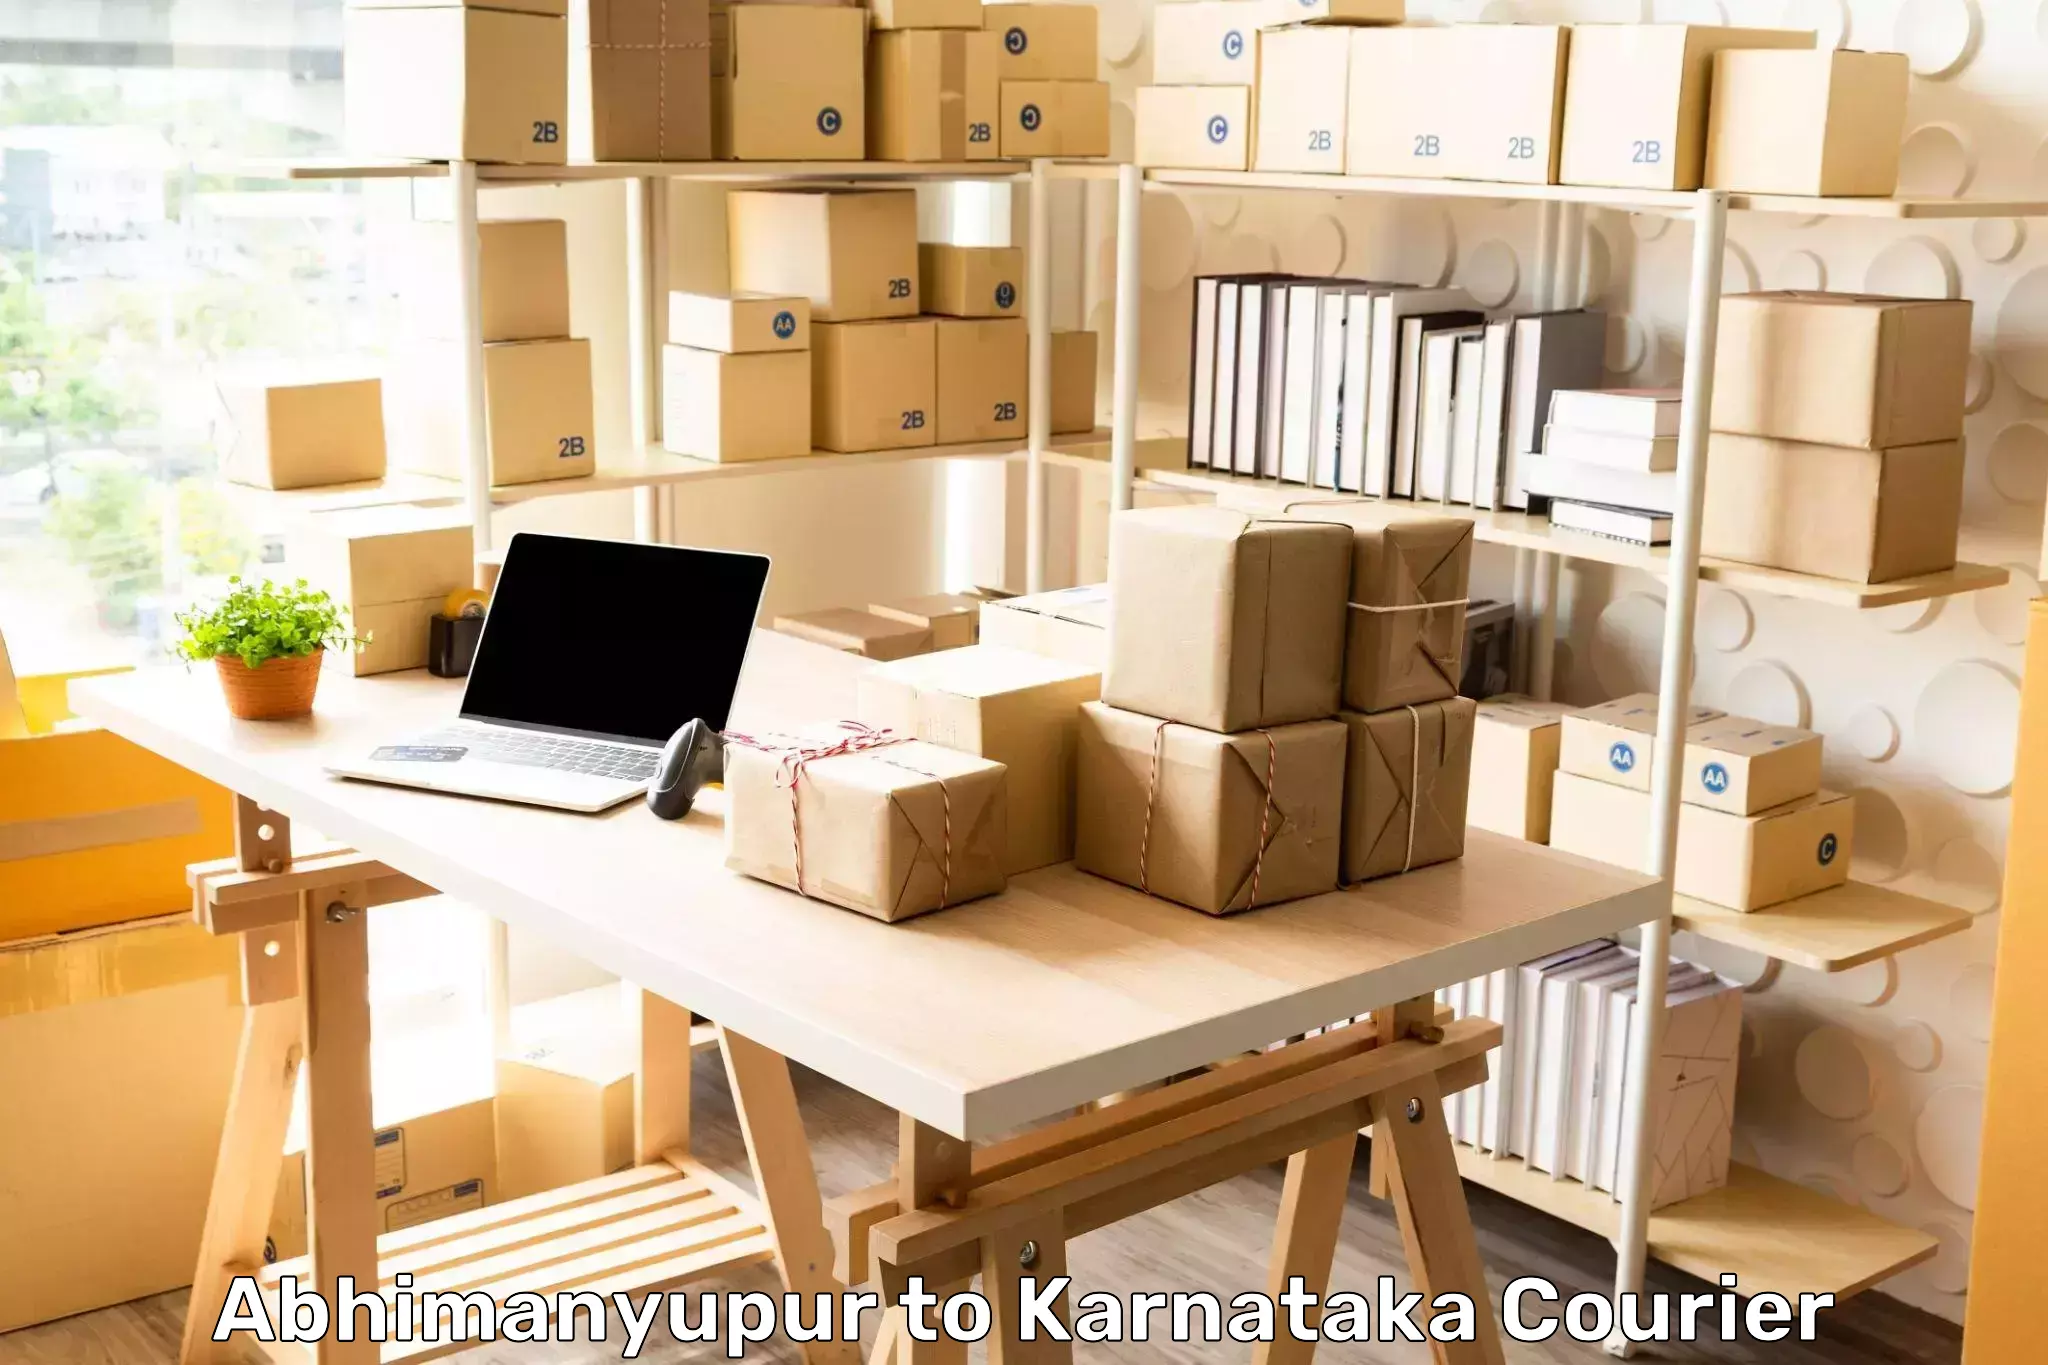 Express courier capabilities Abhimanyupur to Aland Kalaburagi